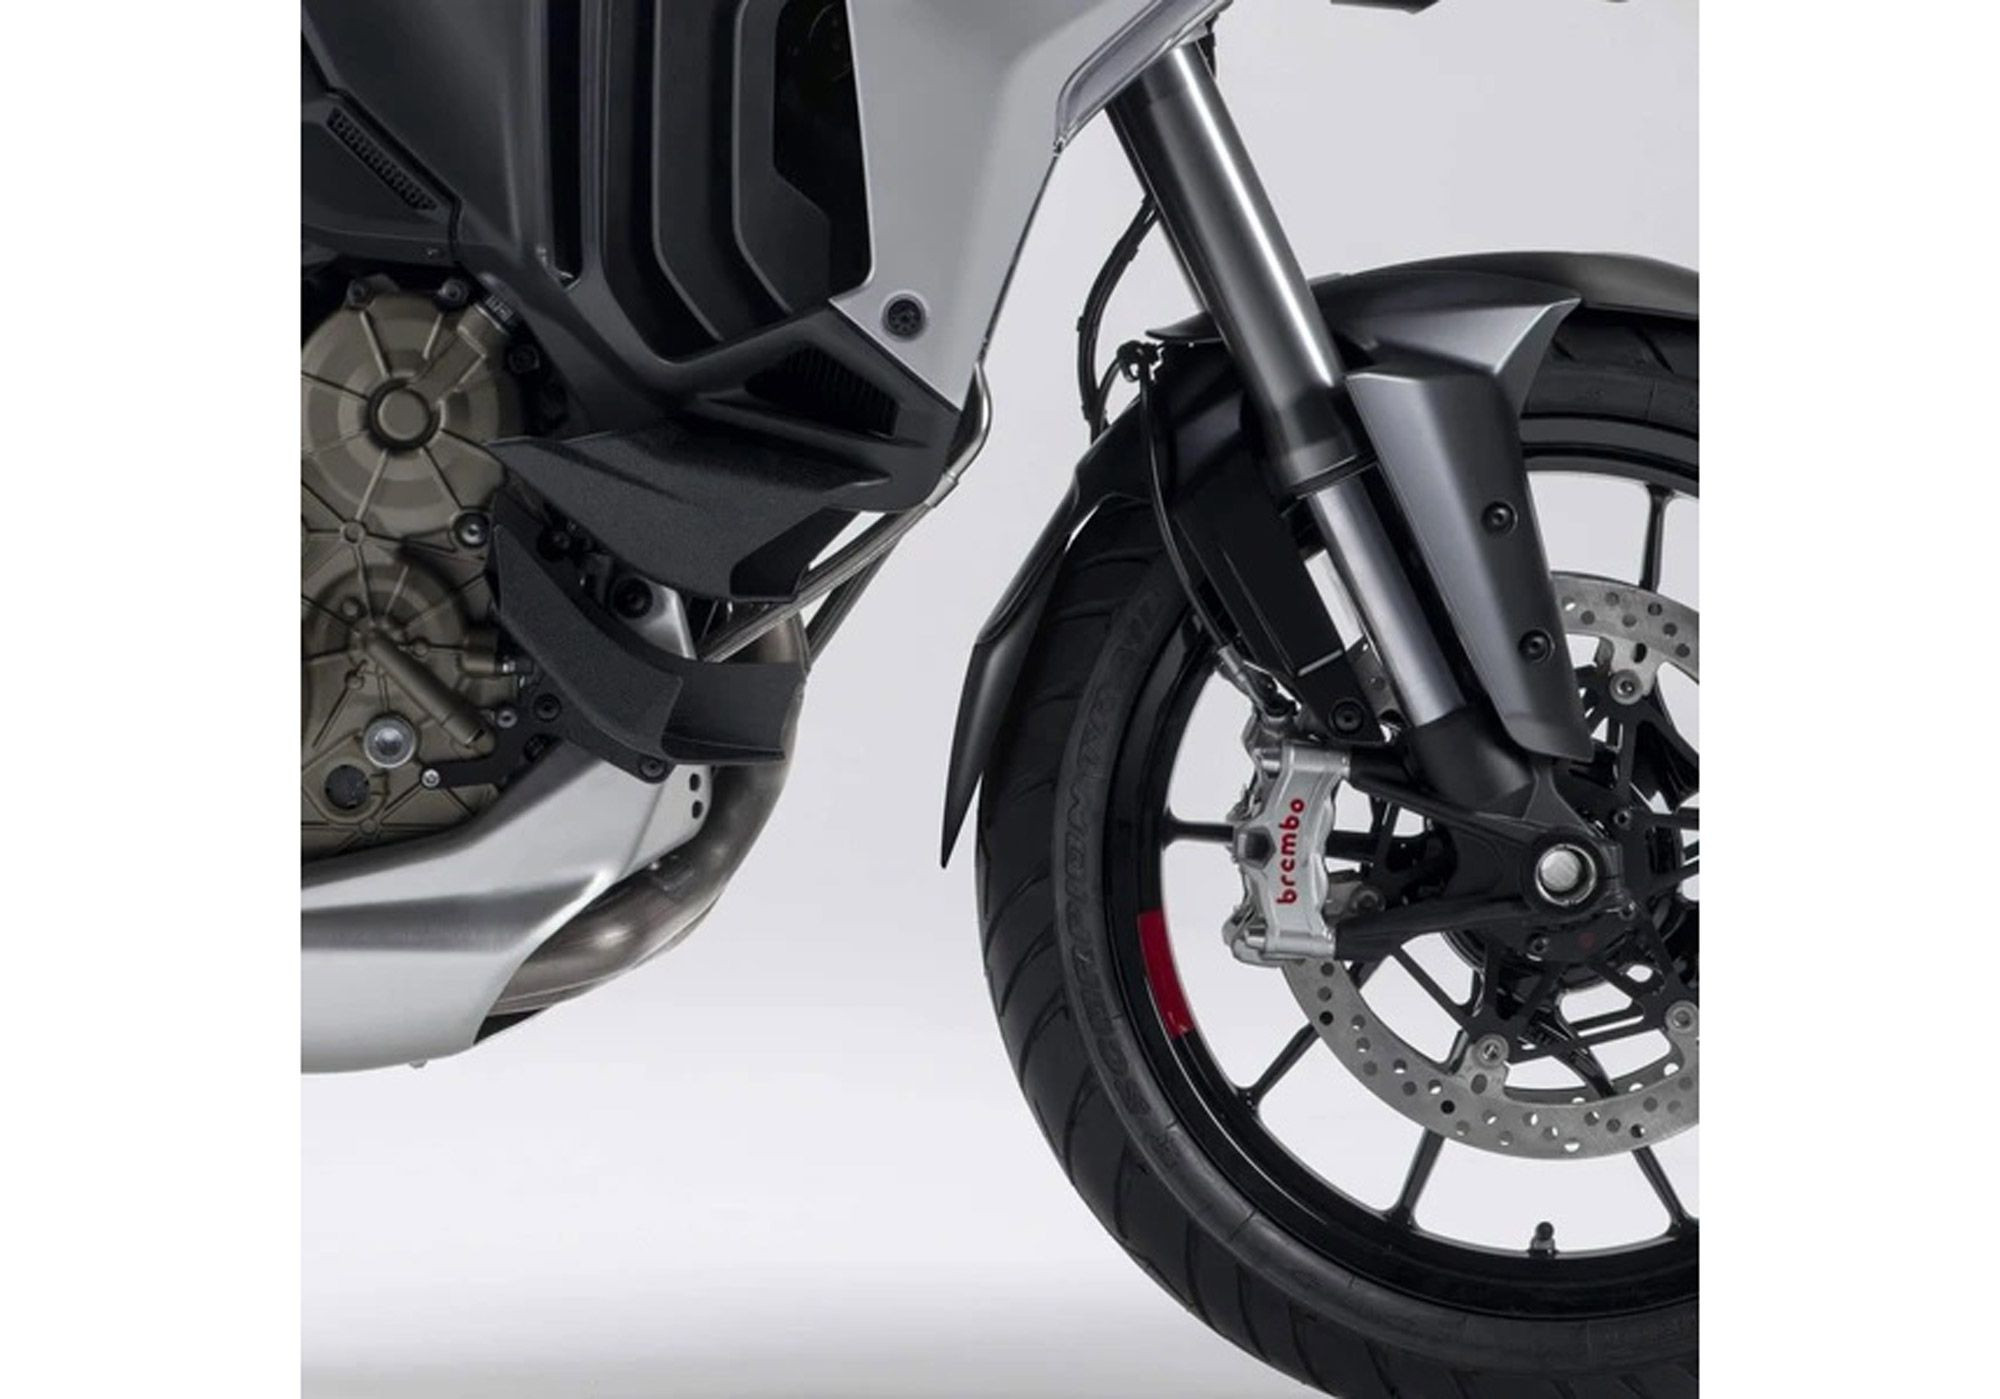 V*BODYSTYLE Kotflügelverlängerung vorne schwarz-matt passt für Ducati Multistrada V4/S/Sport